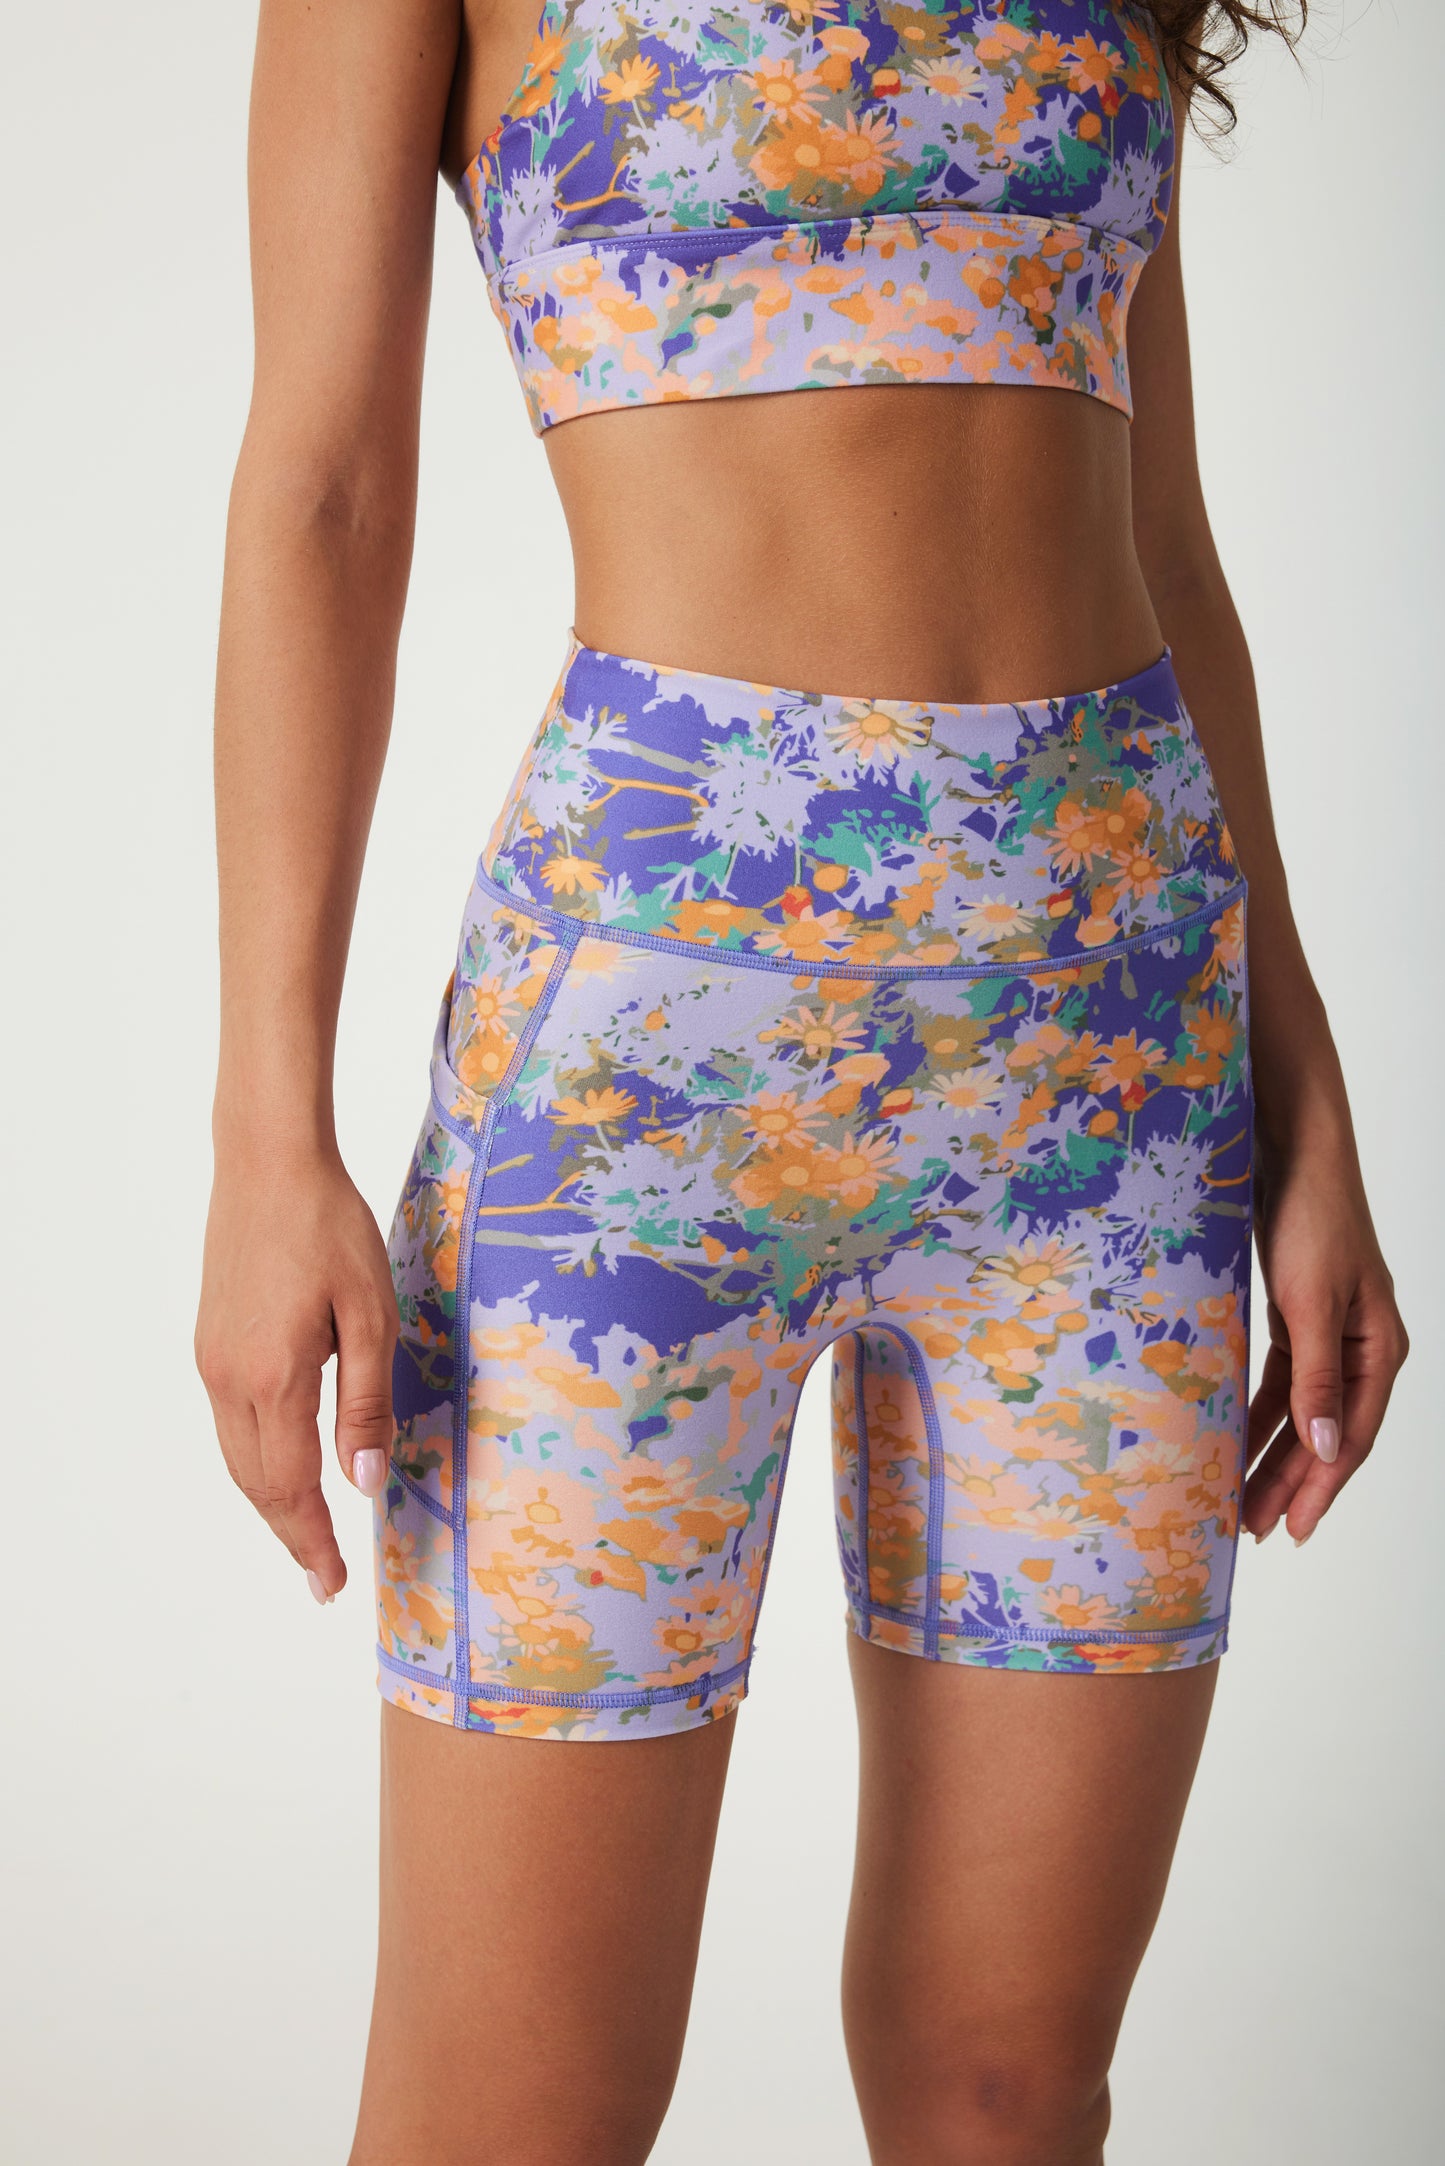 Monet‘s Garden High-waisted Shorts